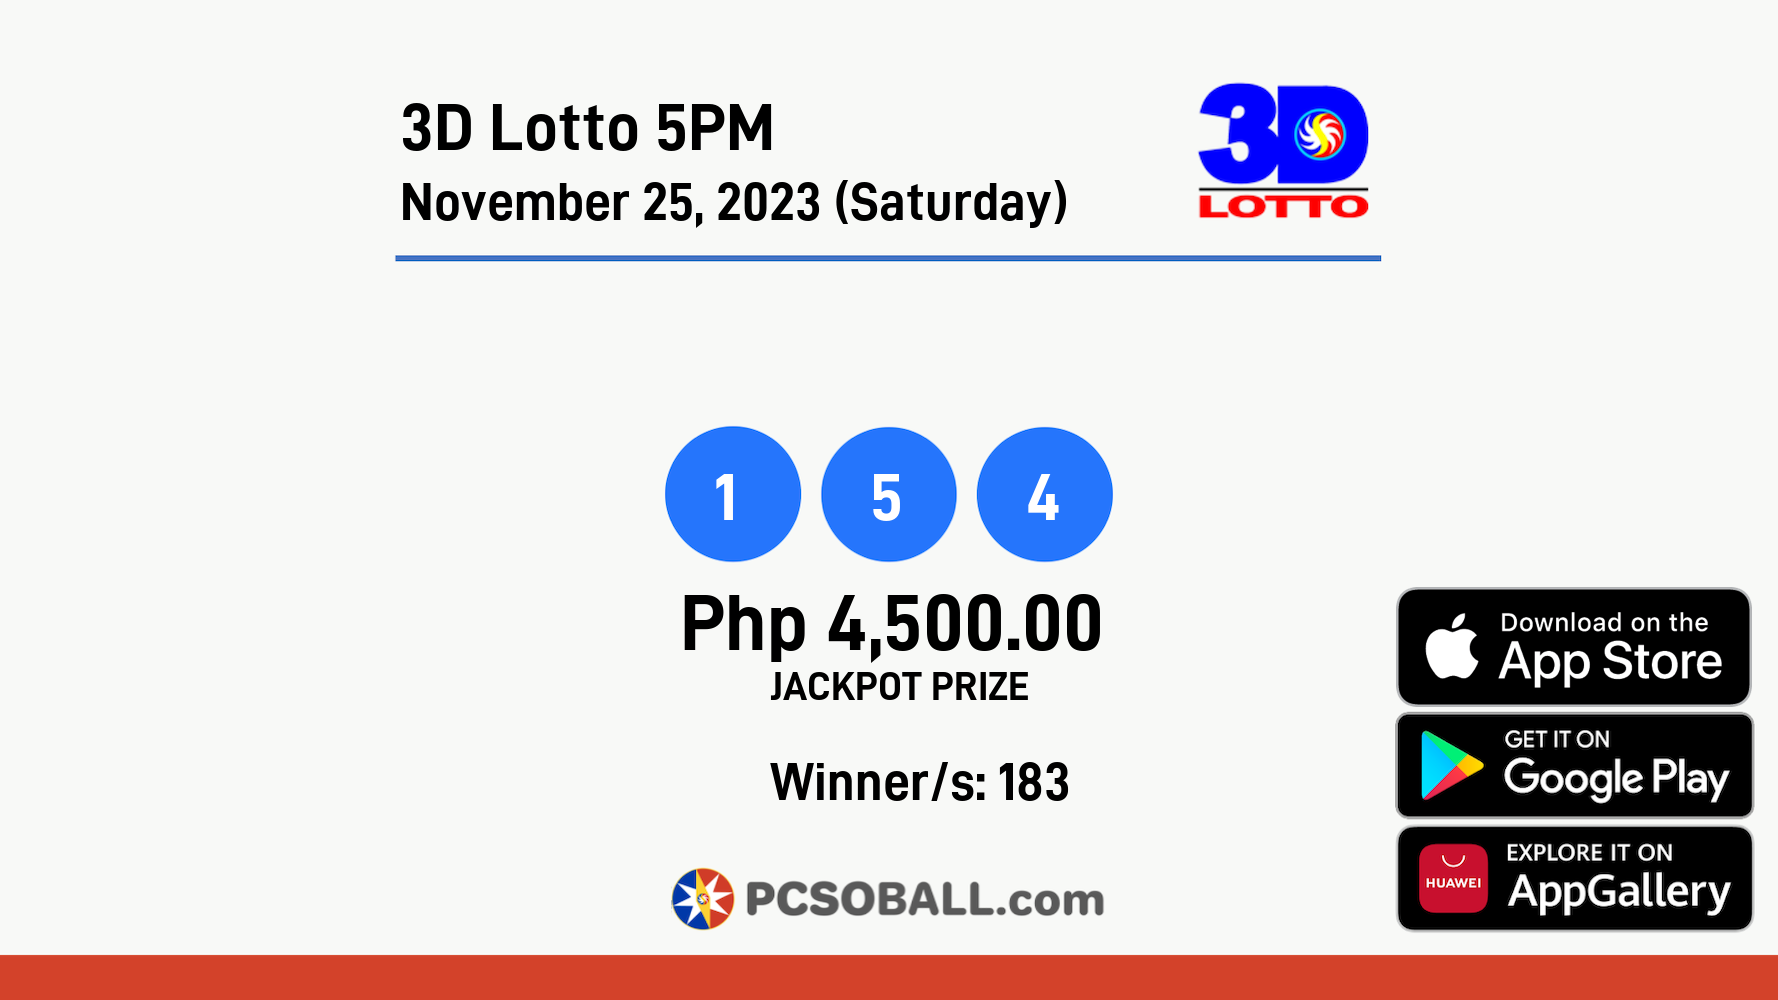 3D Lotto 5PM November 25, 2023 (Saturday) Result